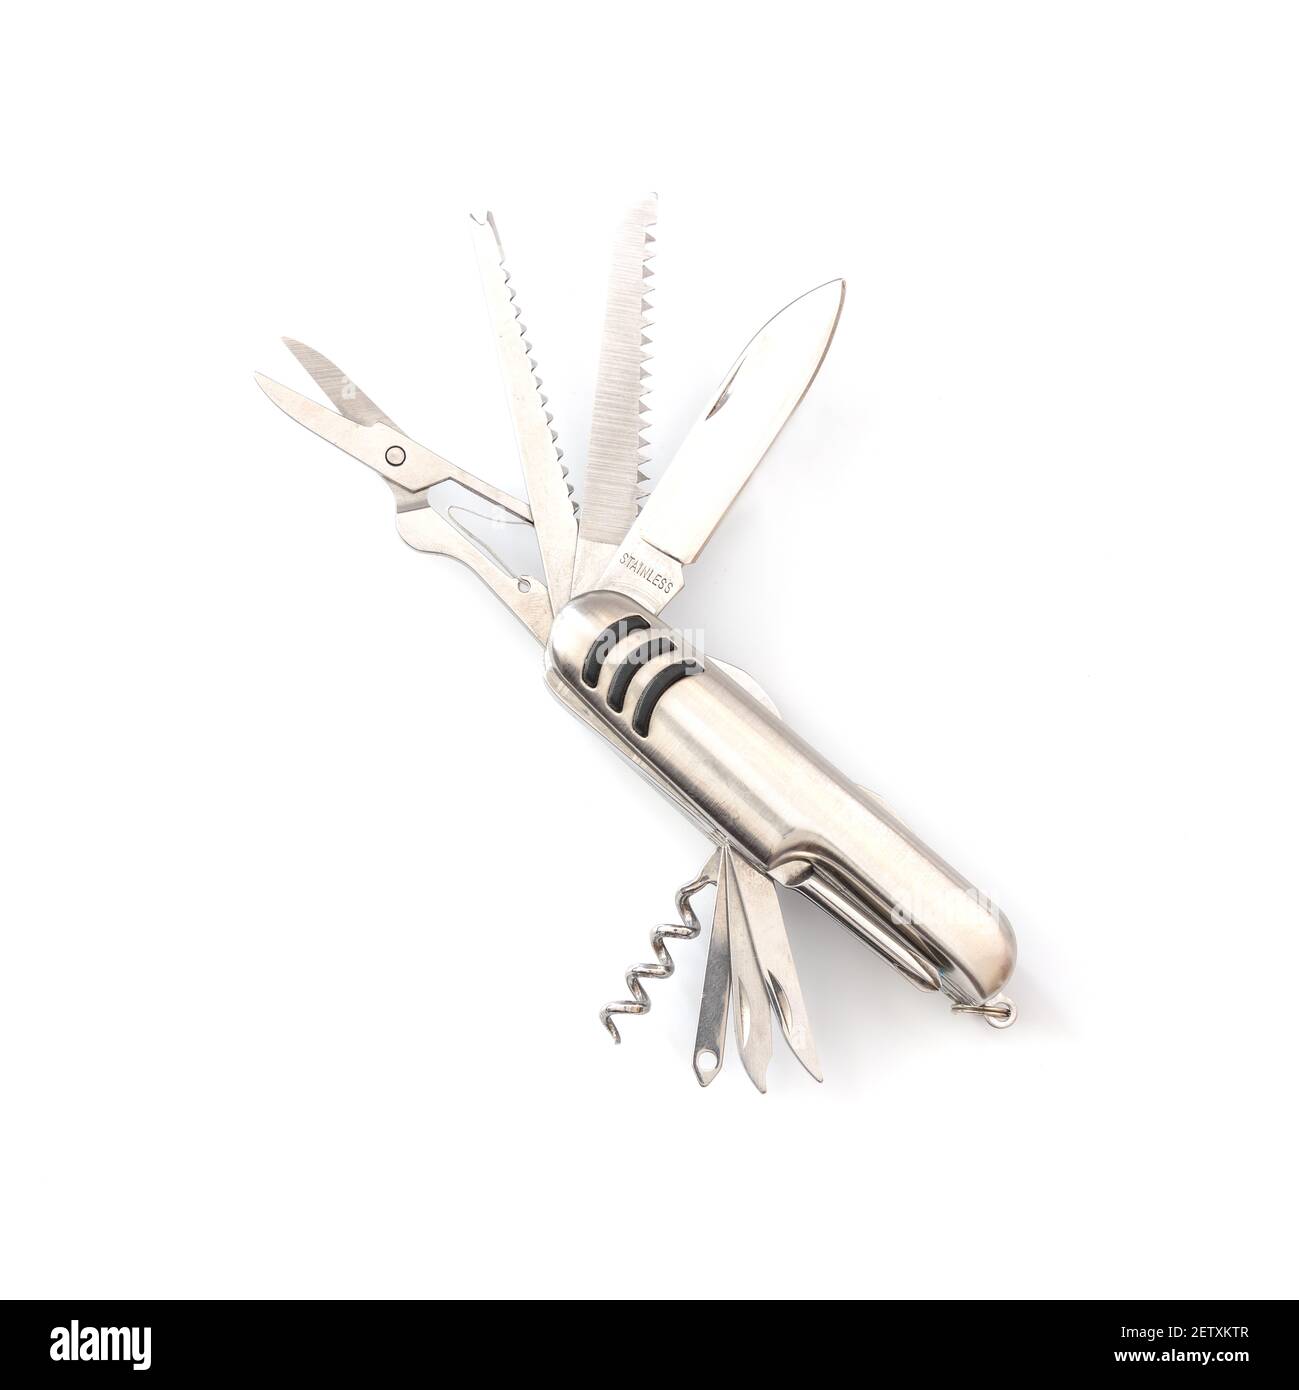 Silberne Tasche, Multifunktions-schweizer Armee Taschenmesser Werkzeug auf  weißem Hintergrund, Camping-Tools, close-up Stockfotografie - Alamy